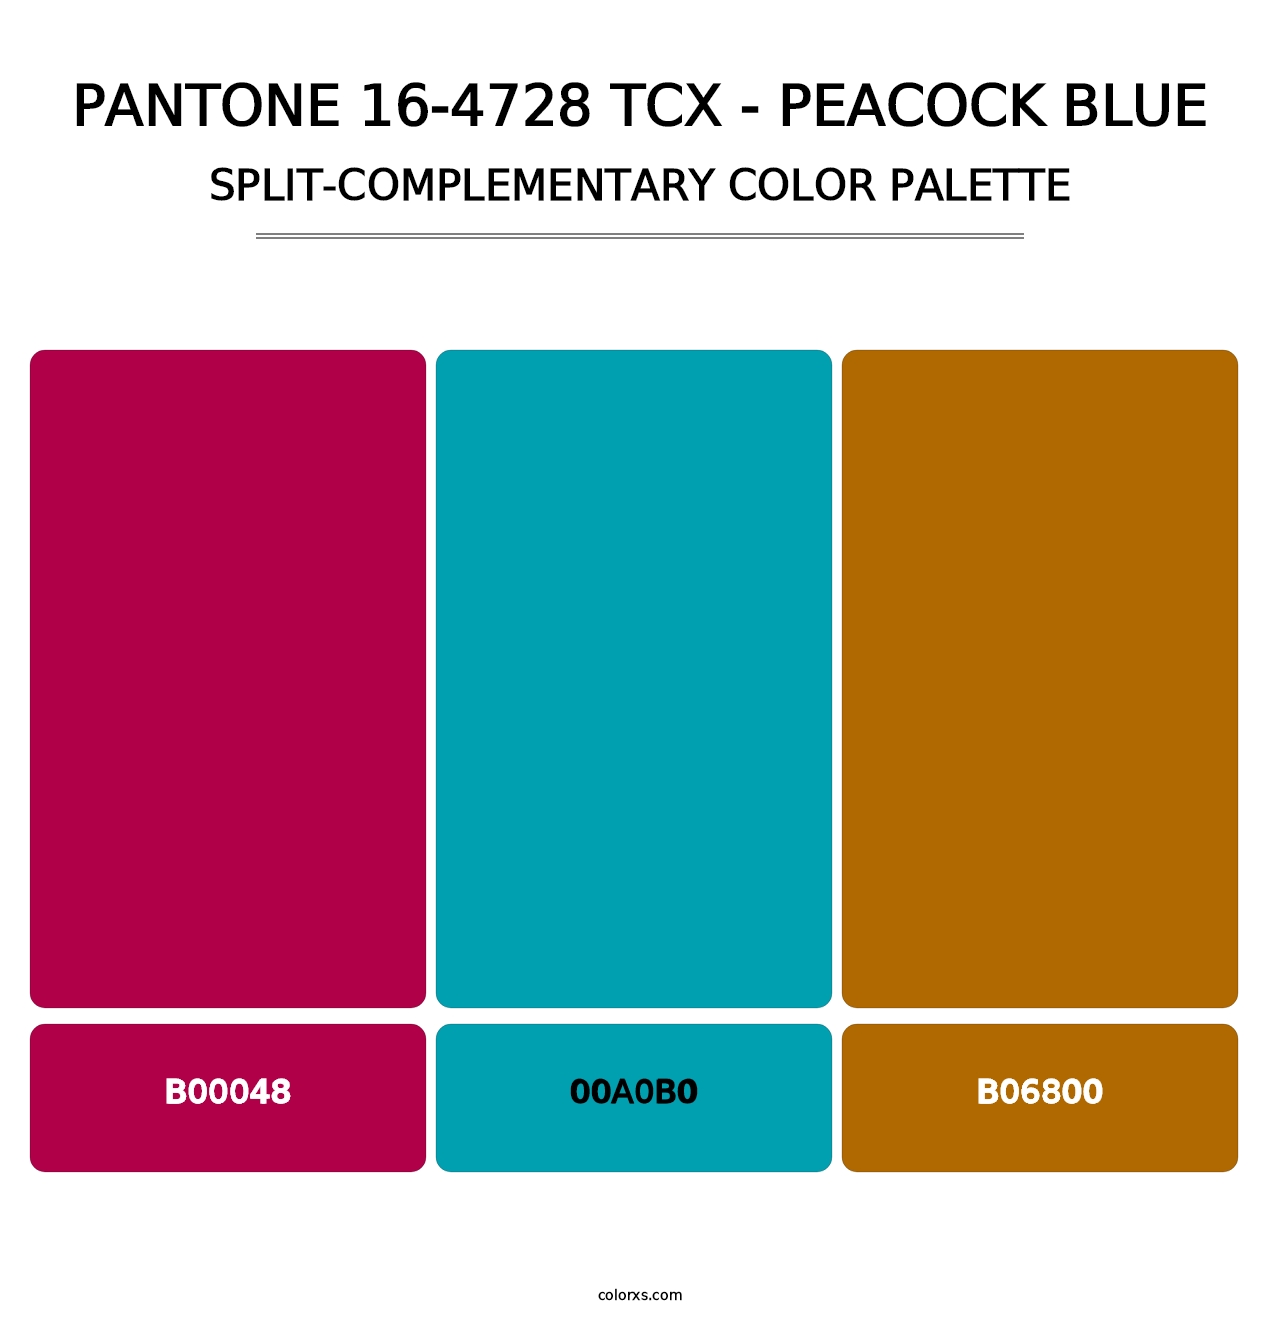 PANTONE 16-4728 TCX - Peacock Blue - Split-Complementary Color Palette